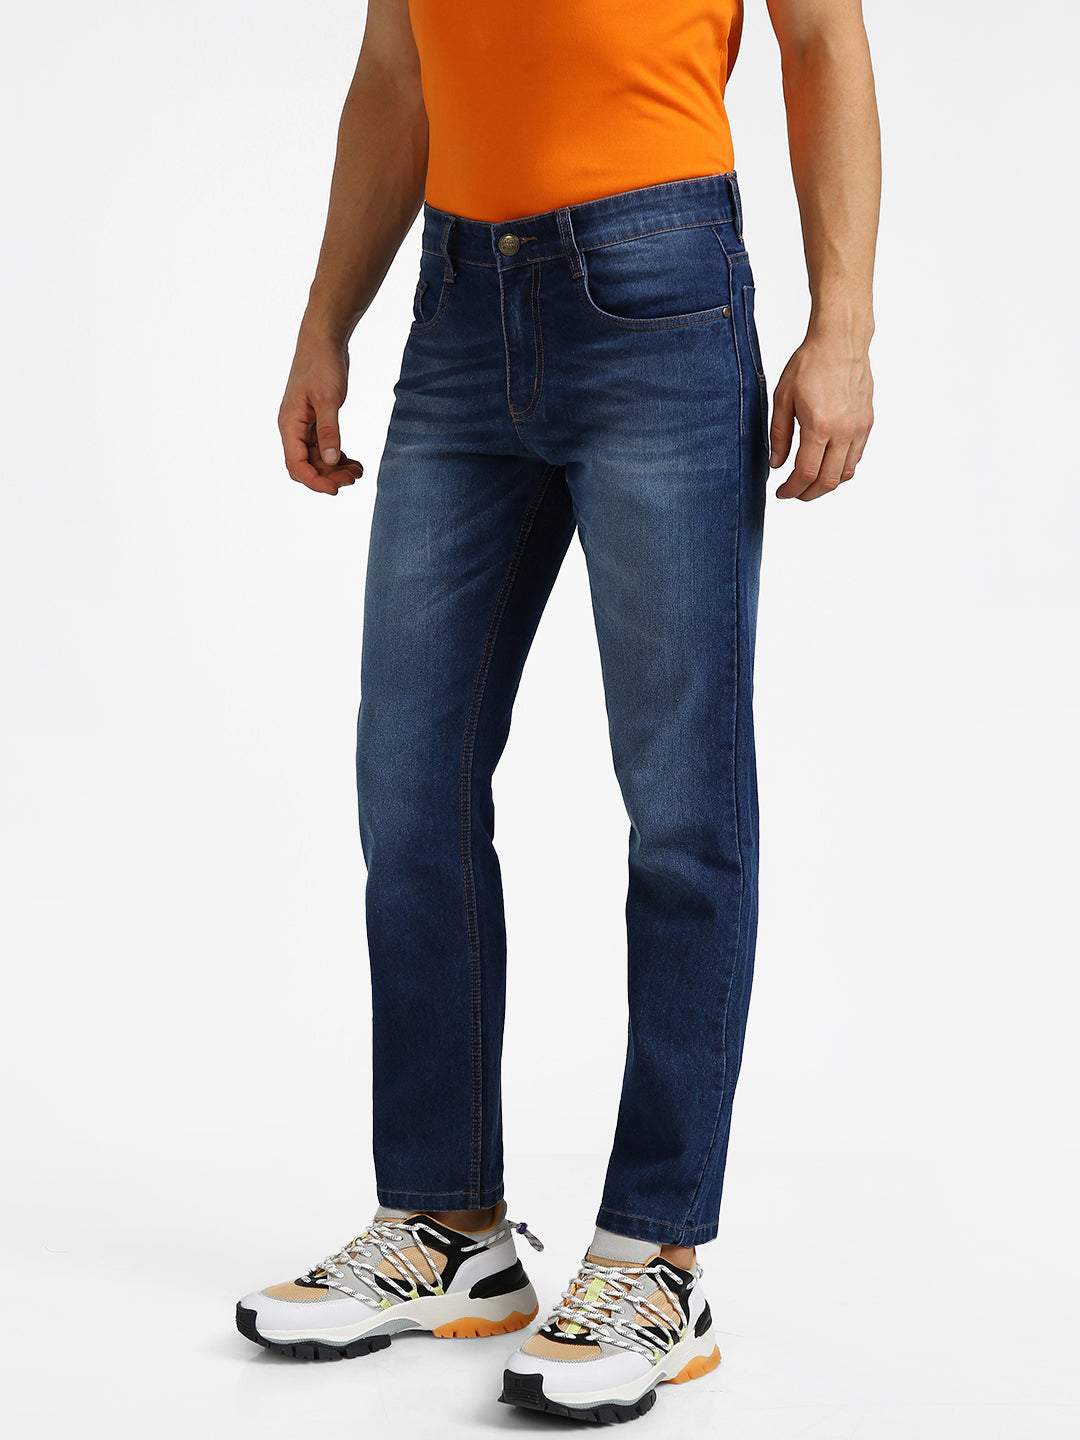 Men's Mild Blue Regular Fit Washed Jeans Stretchable